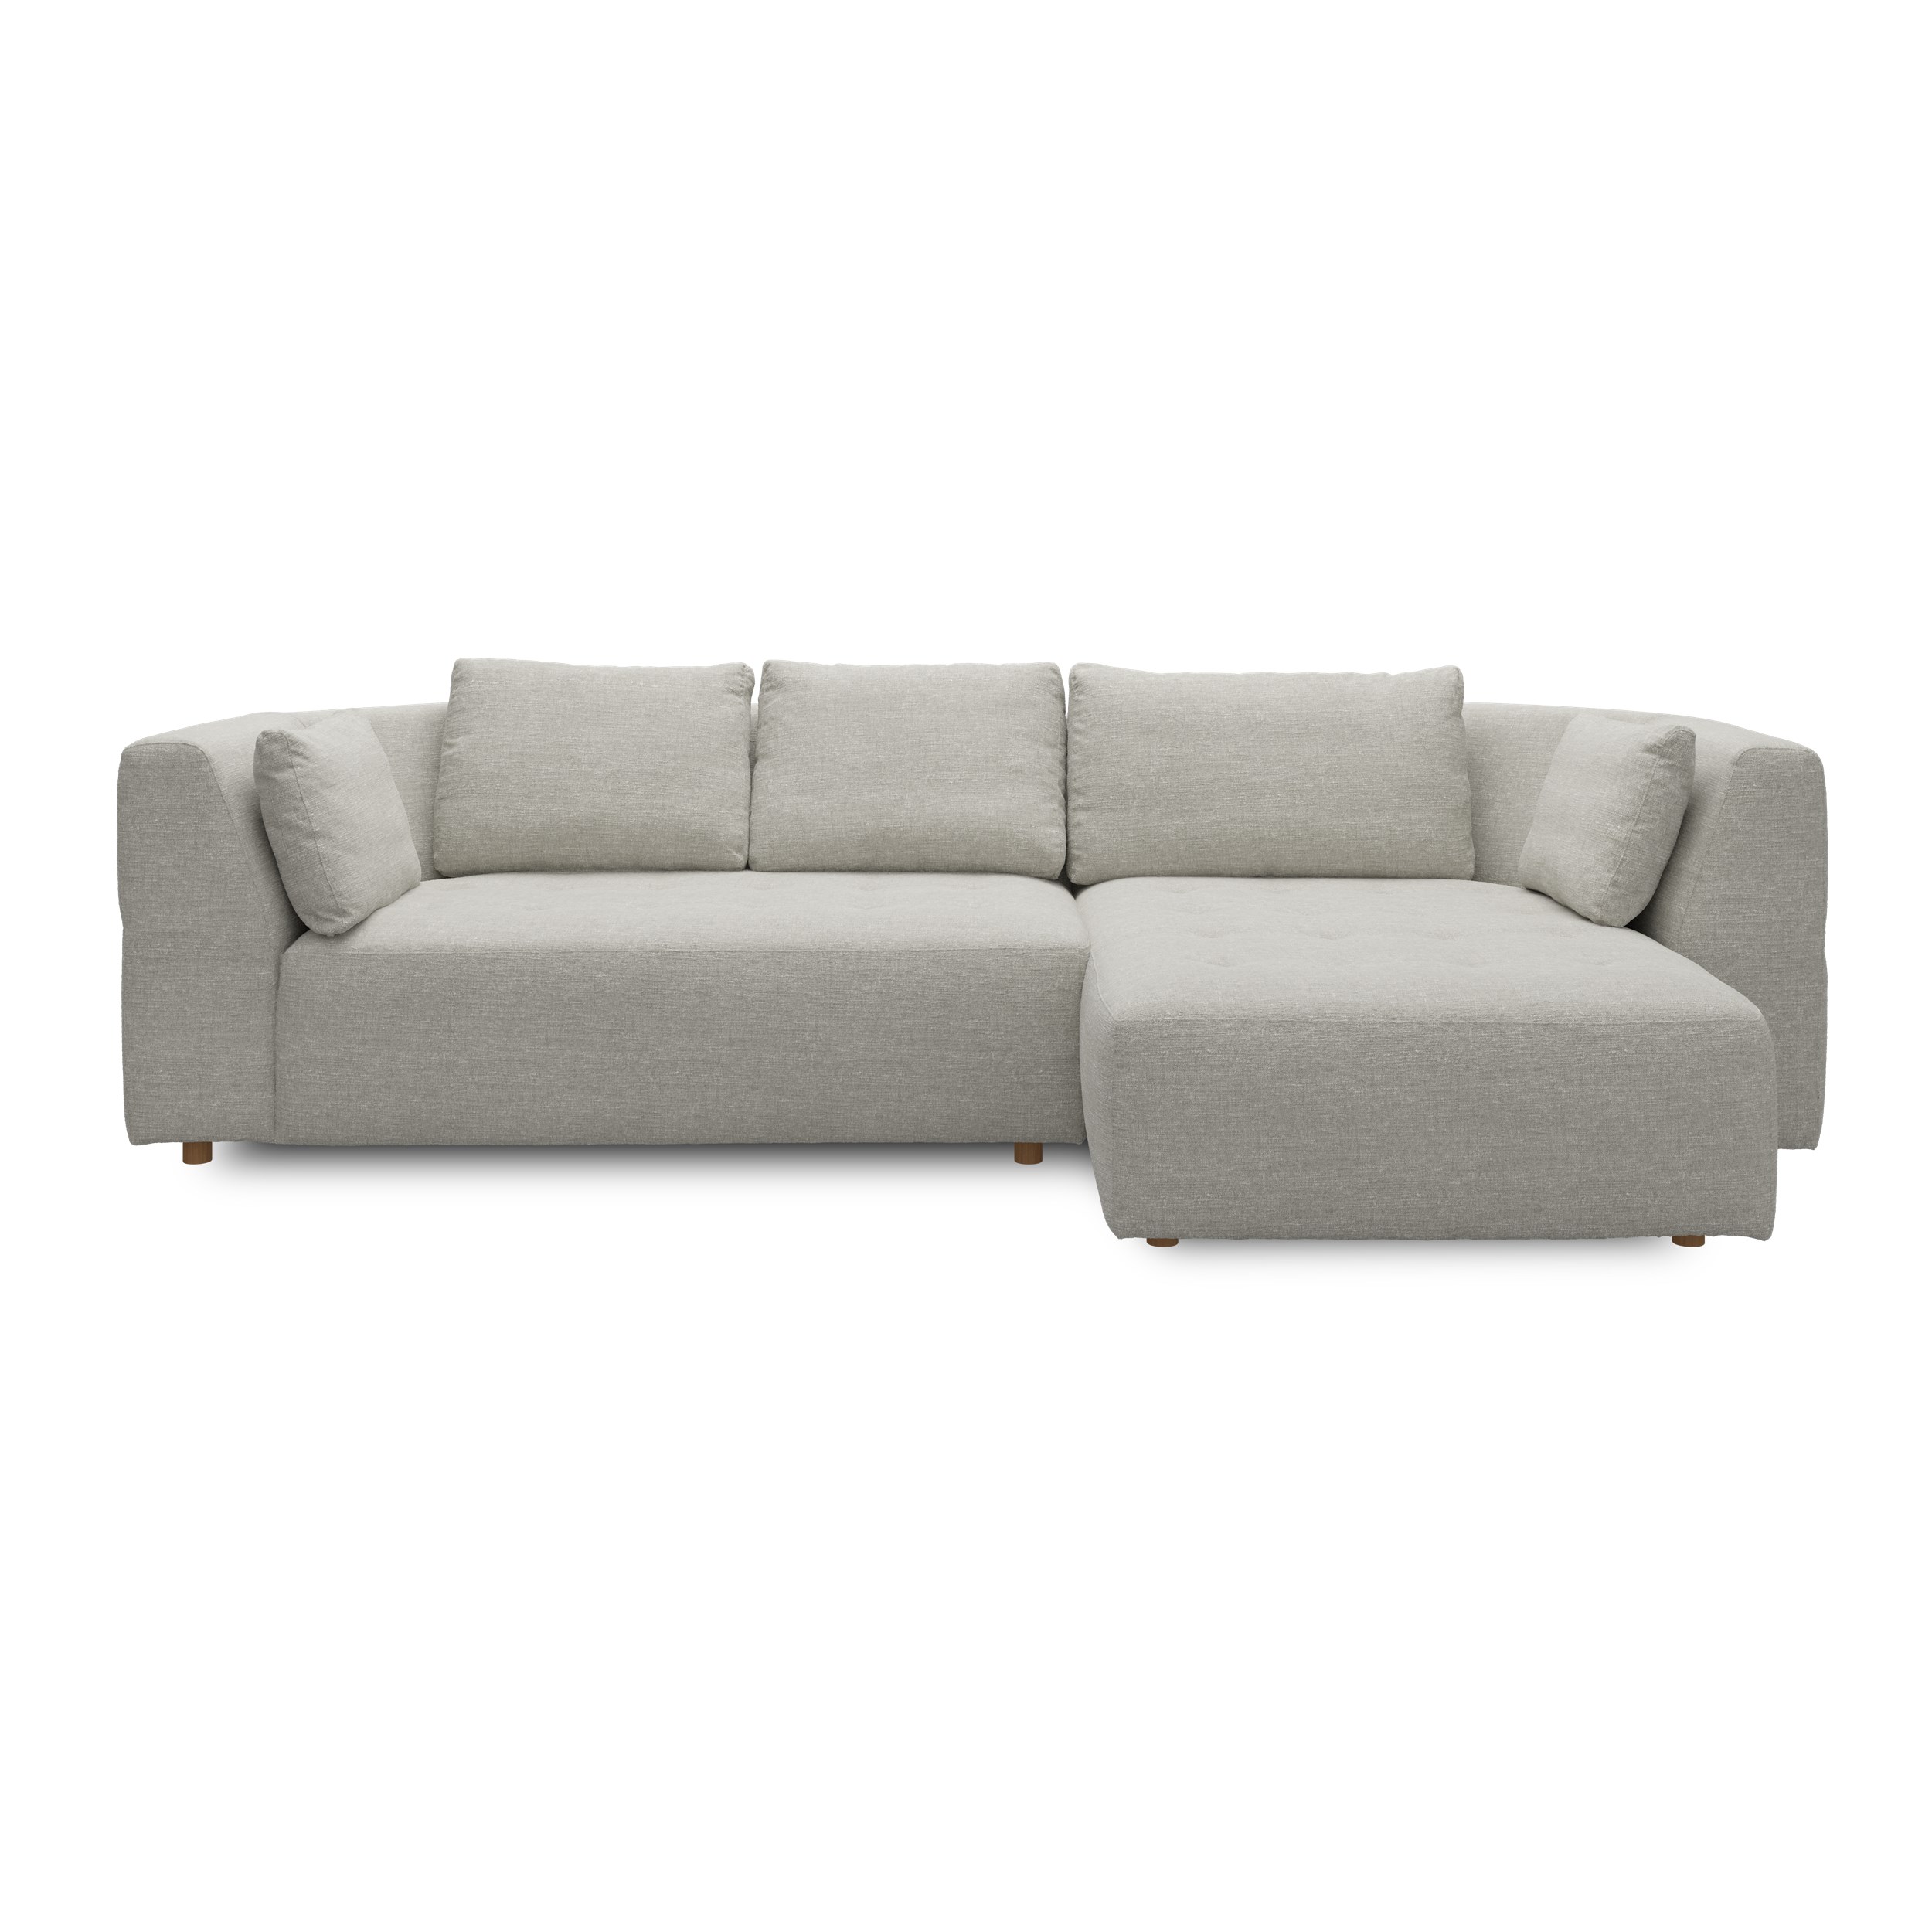 Walker högervänd soffa med schäslong - Caleido St. 12 grey-beige textil, ben no . 173 natur ek och S: Kallskum R: Dun/Silikon